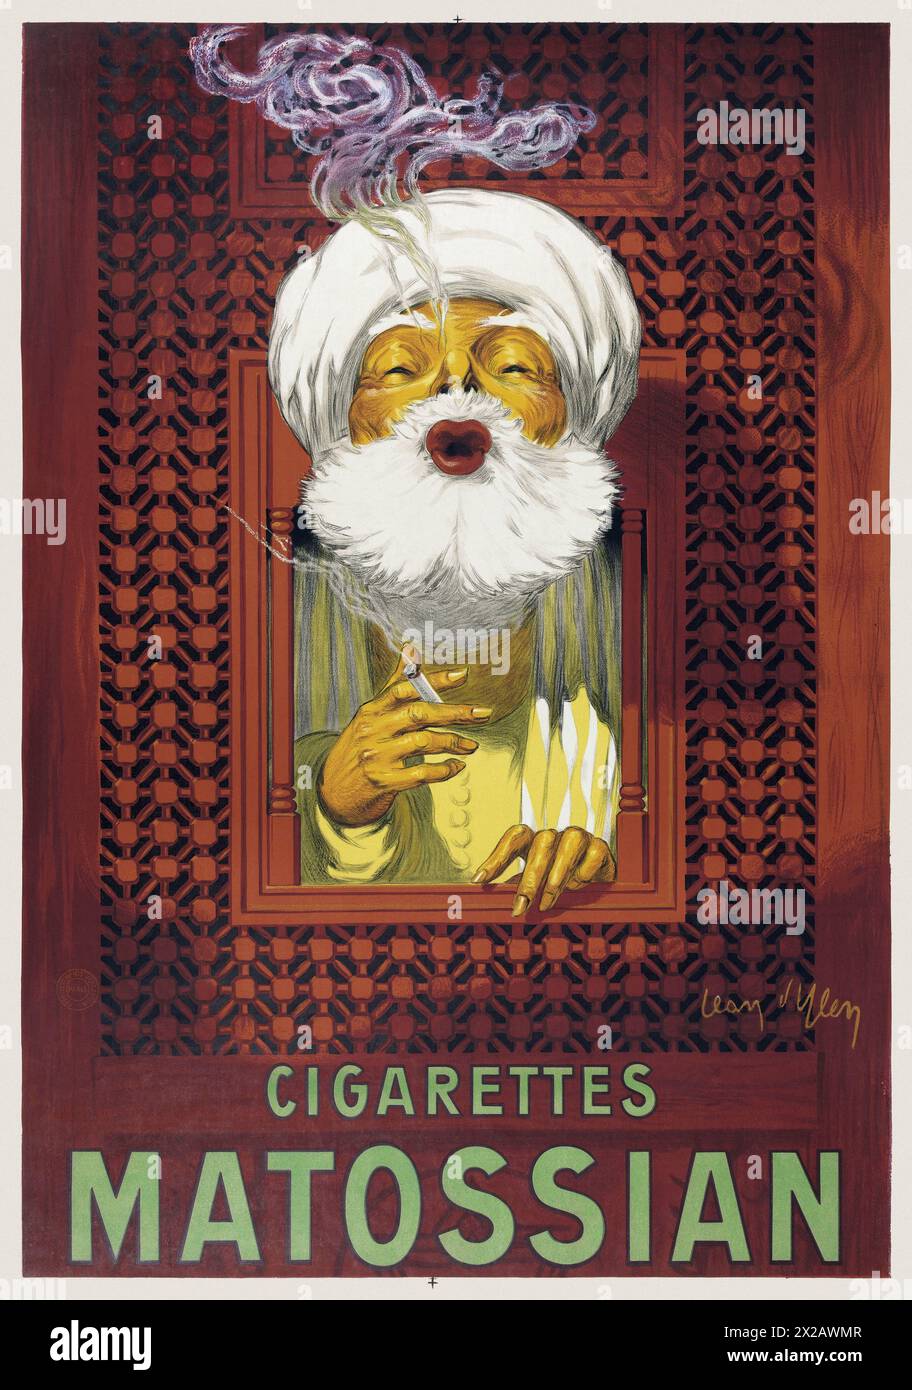 Zigaretten Matossian von Jean d'Ylen (1886-1938). Poster veröffentlicht 1921 in Frankreich. Stockfoto